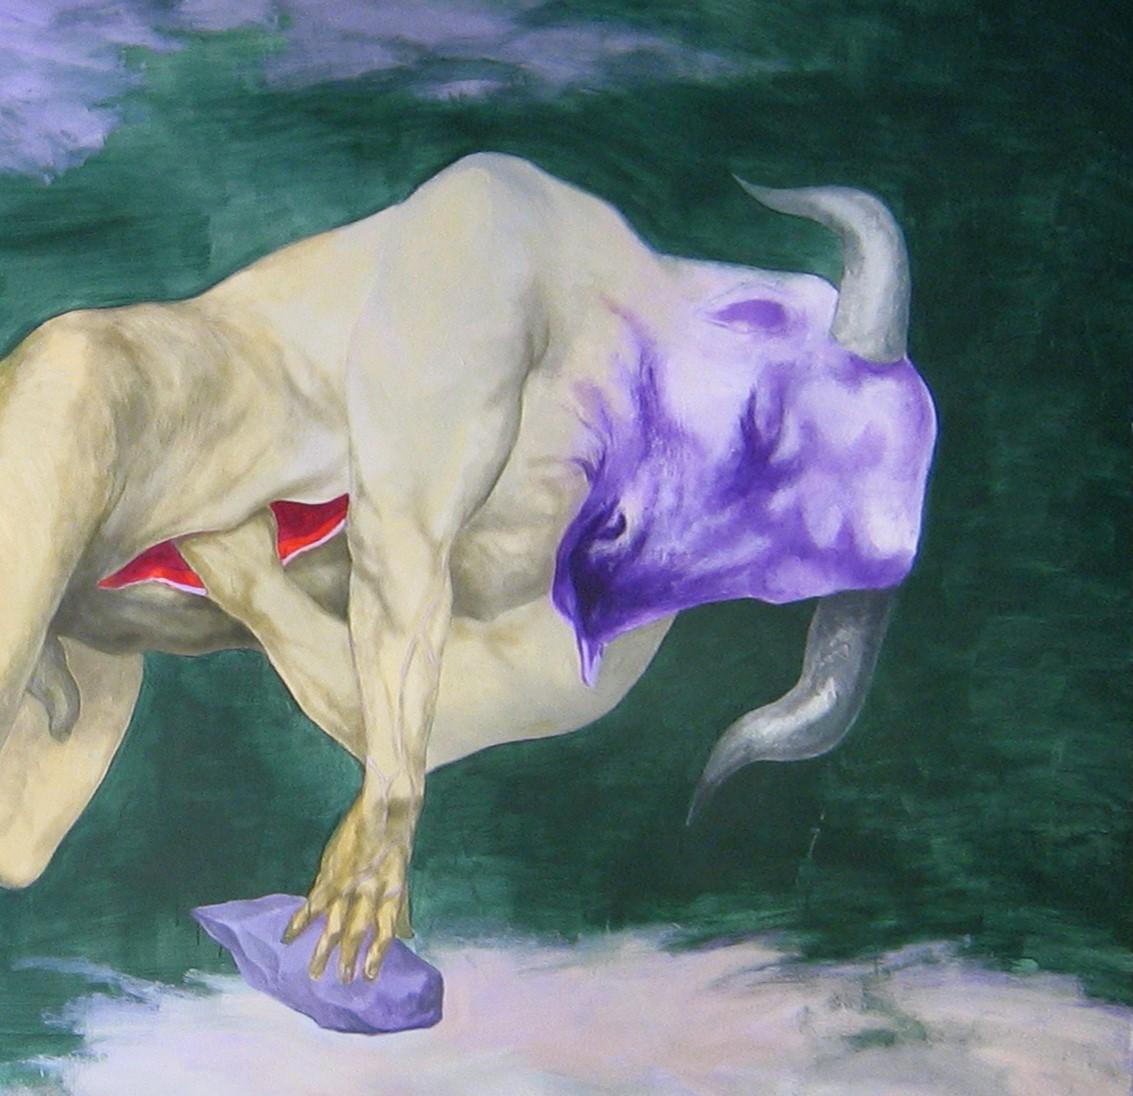 Incipit - 21e siècle, peinture figurative, Minotaure, violet, vert, taureau - Painting de Alexandru Rădvan